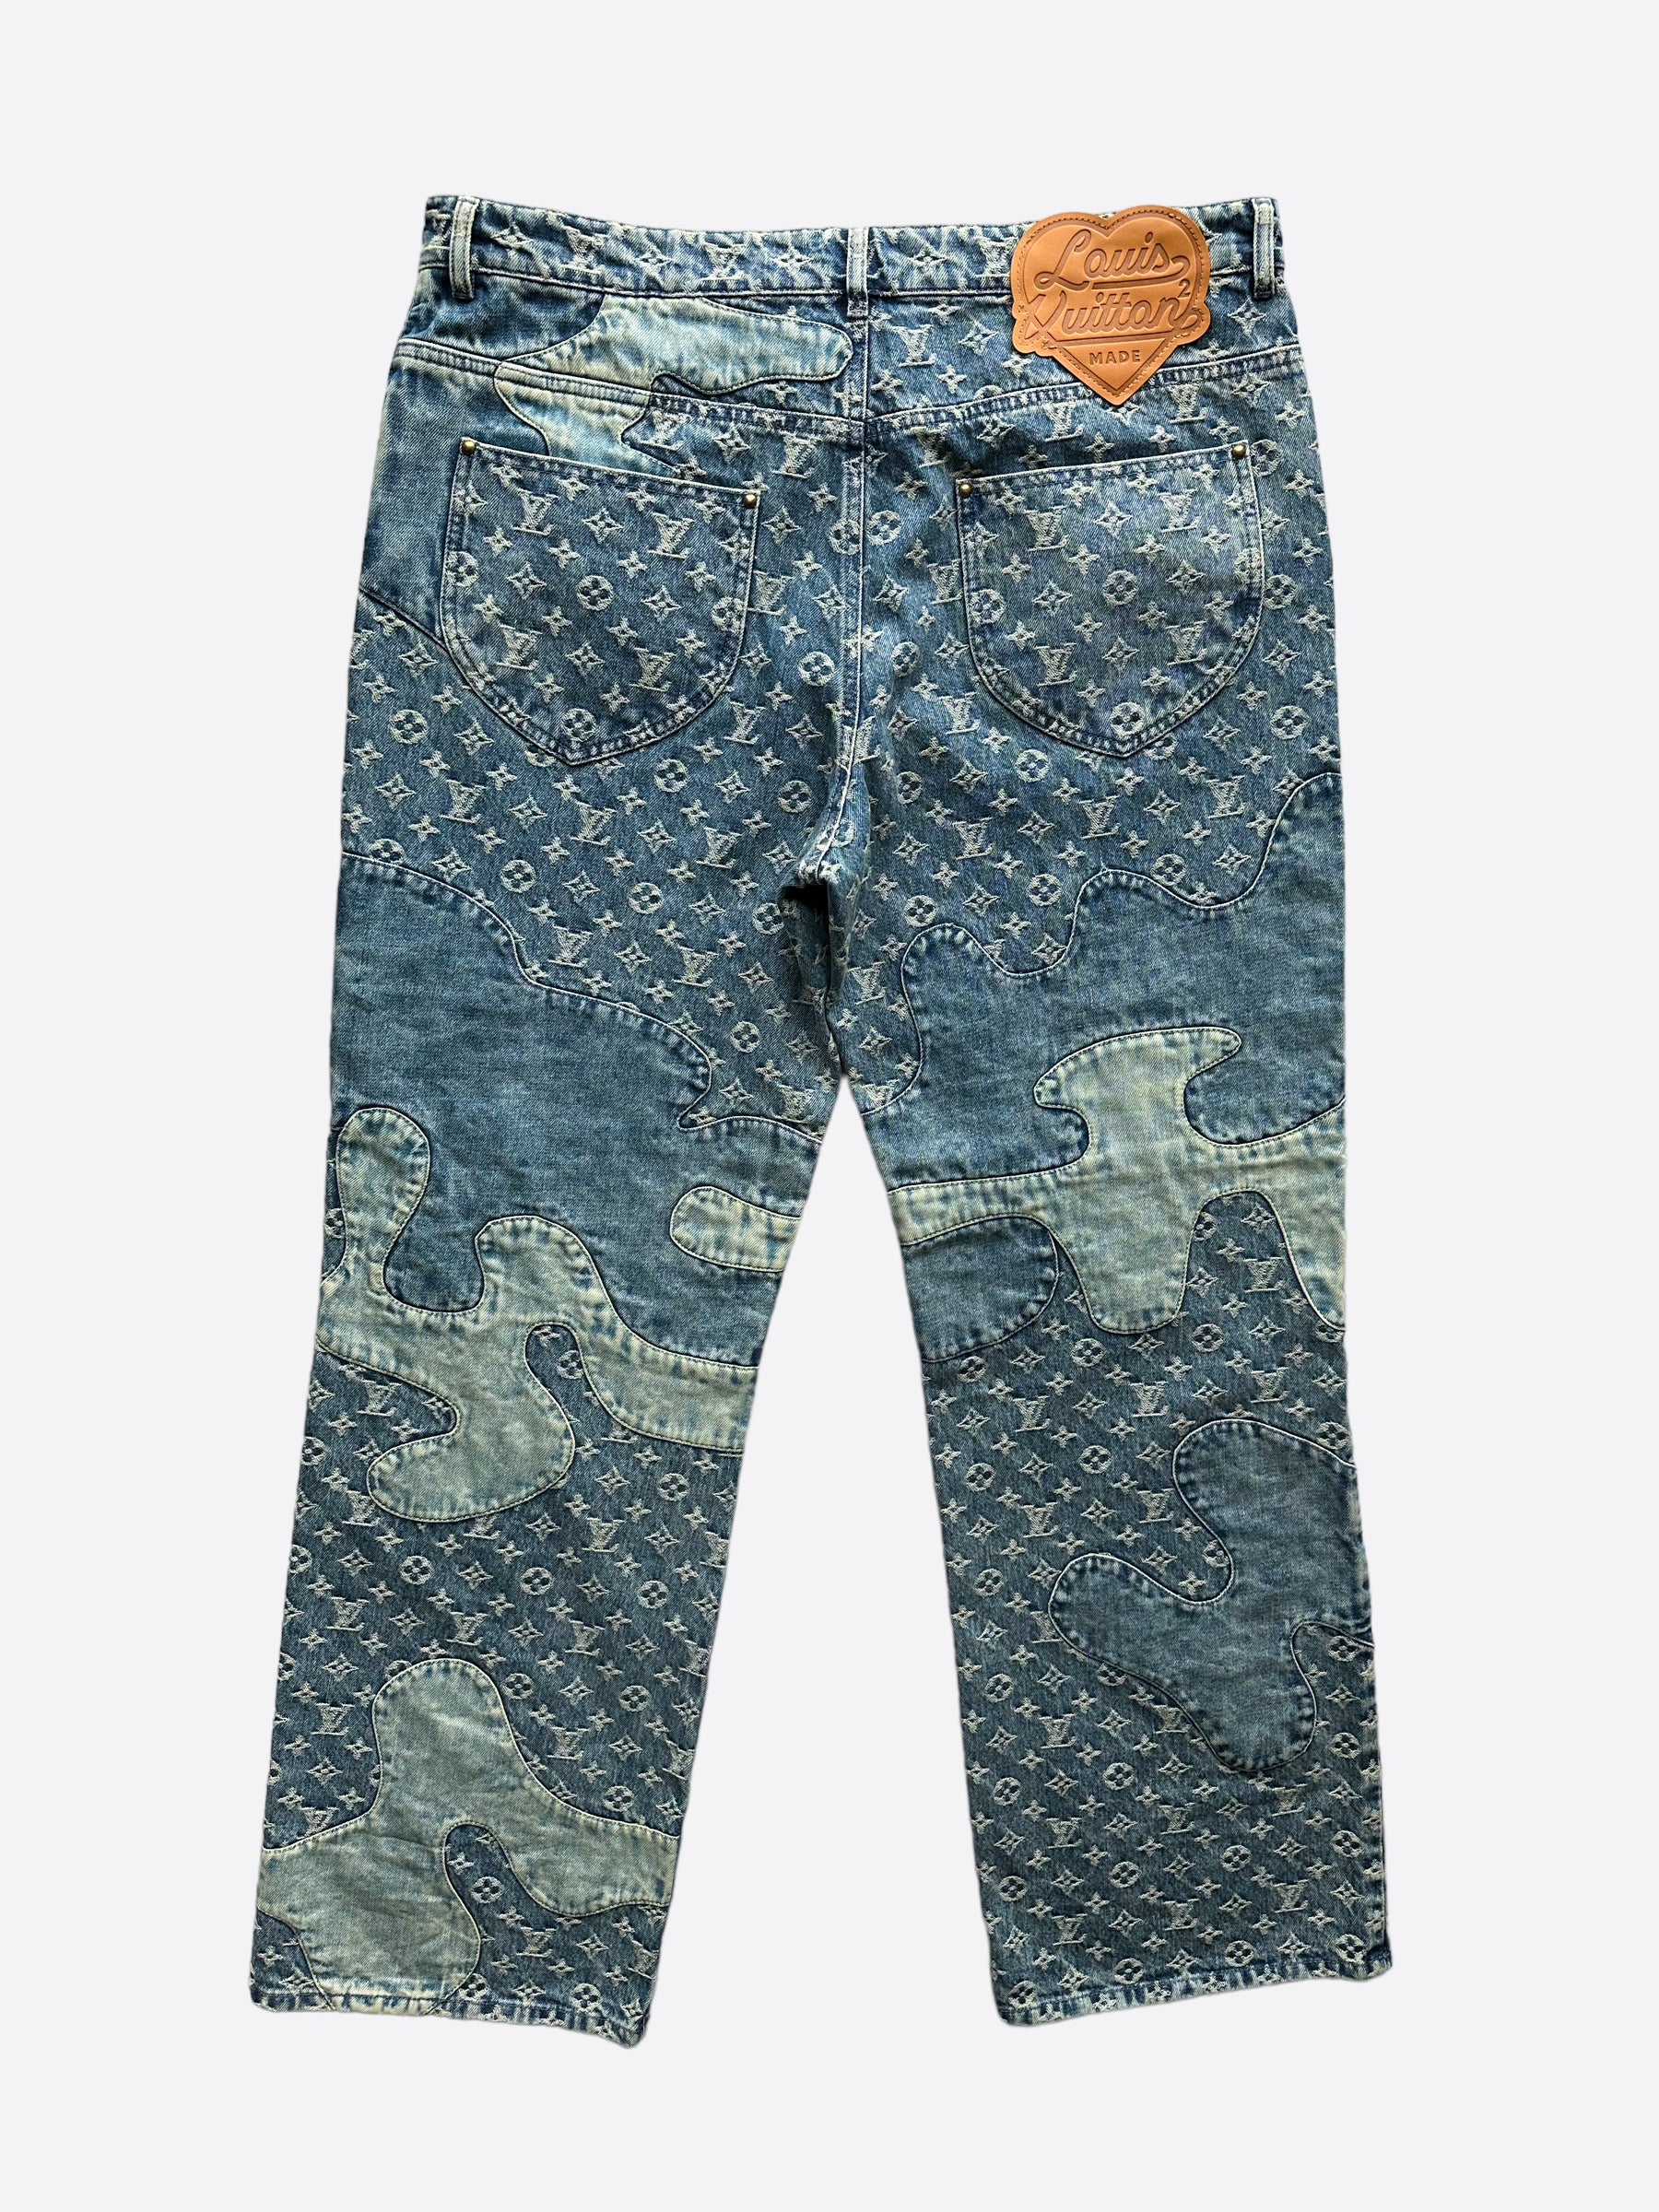 Louis Vuitton x Nigo Monogram Patchwork Jeans - Blue, 12.25 Rise